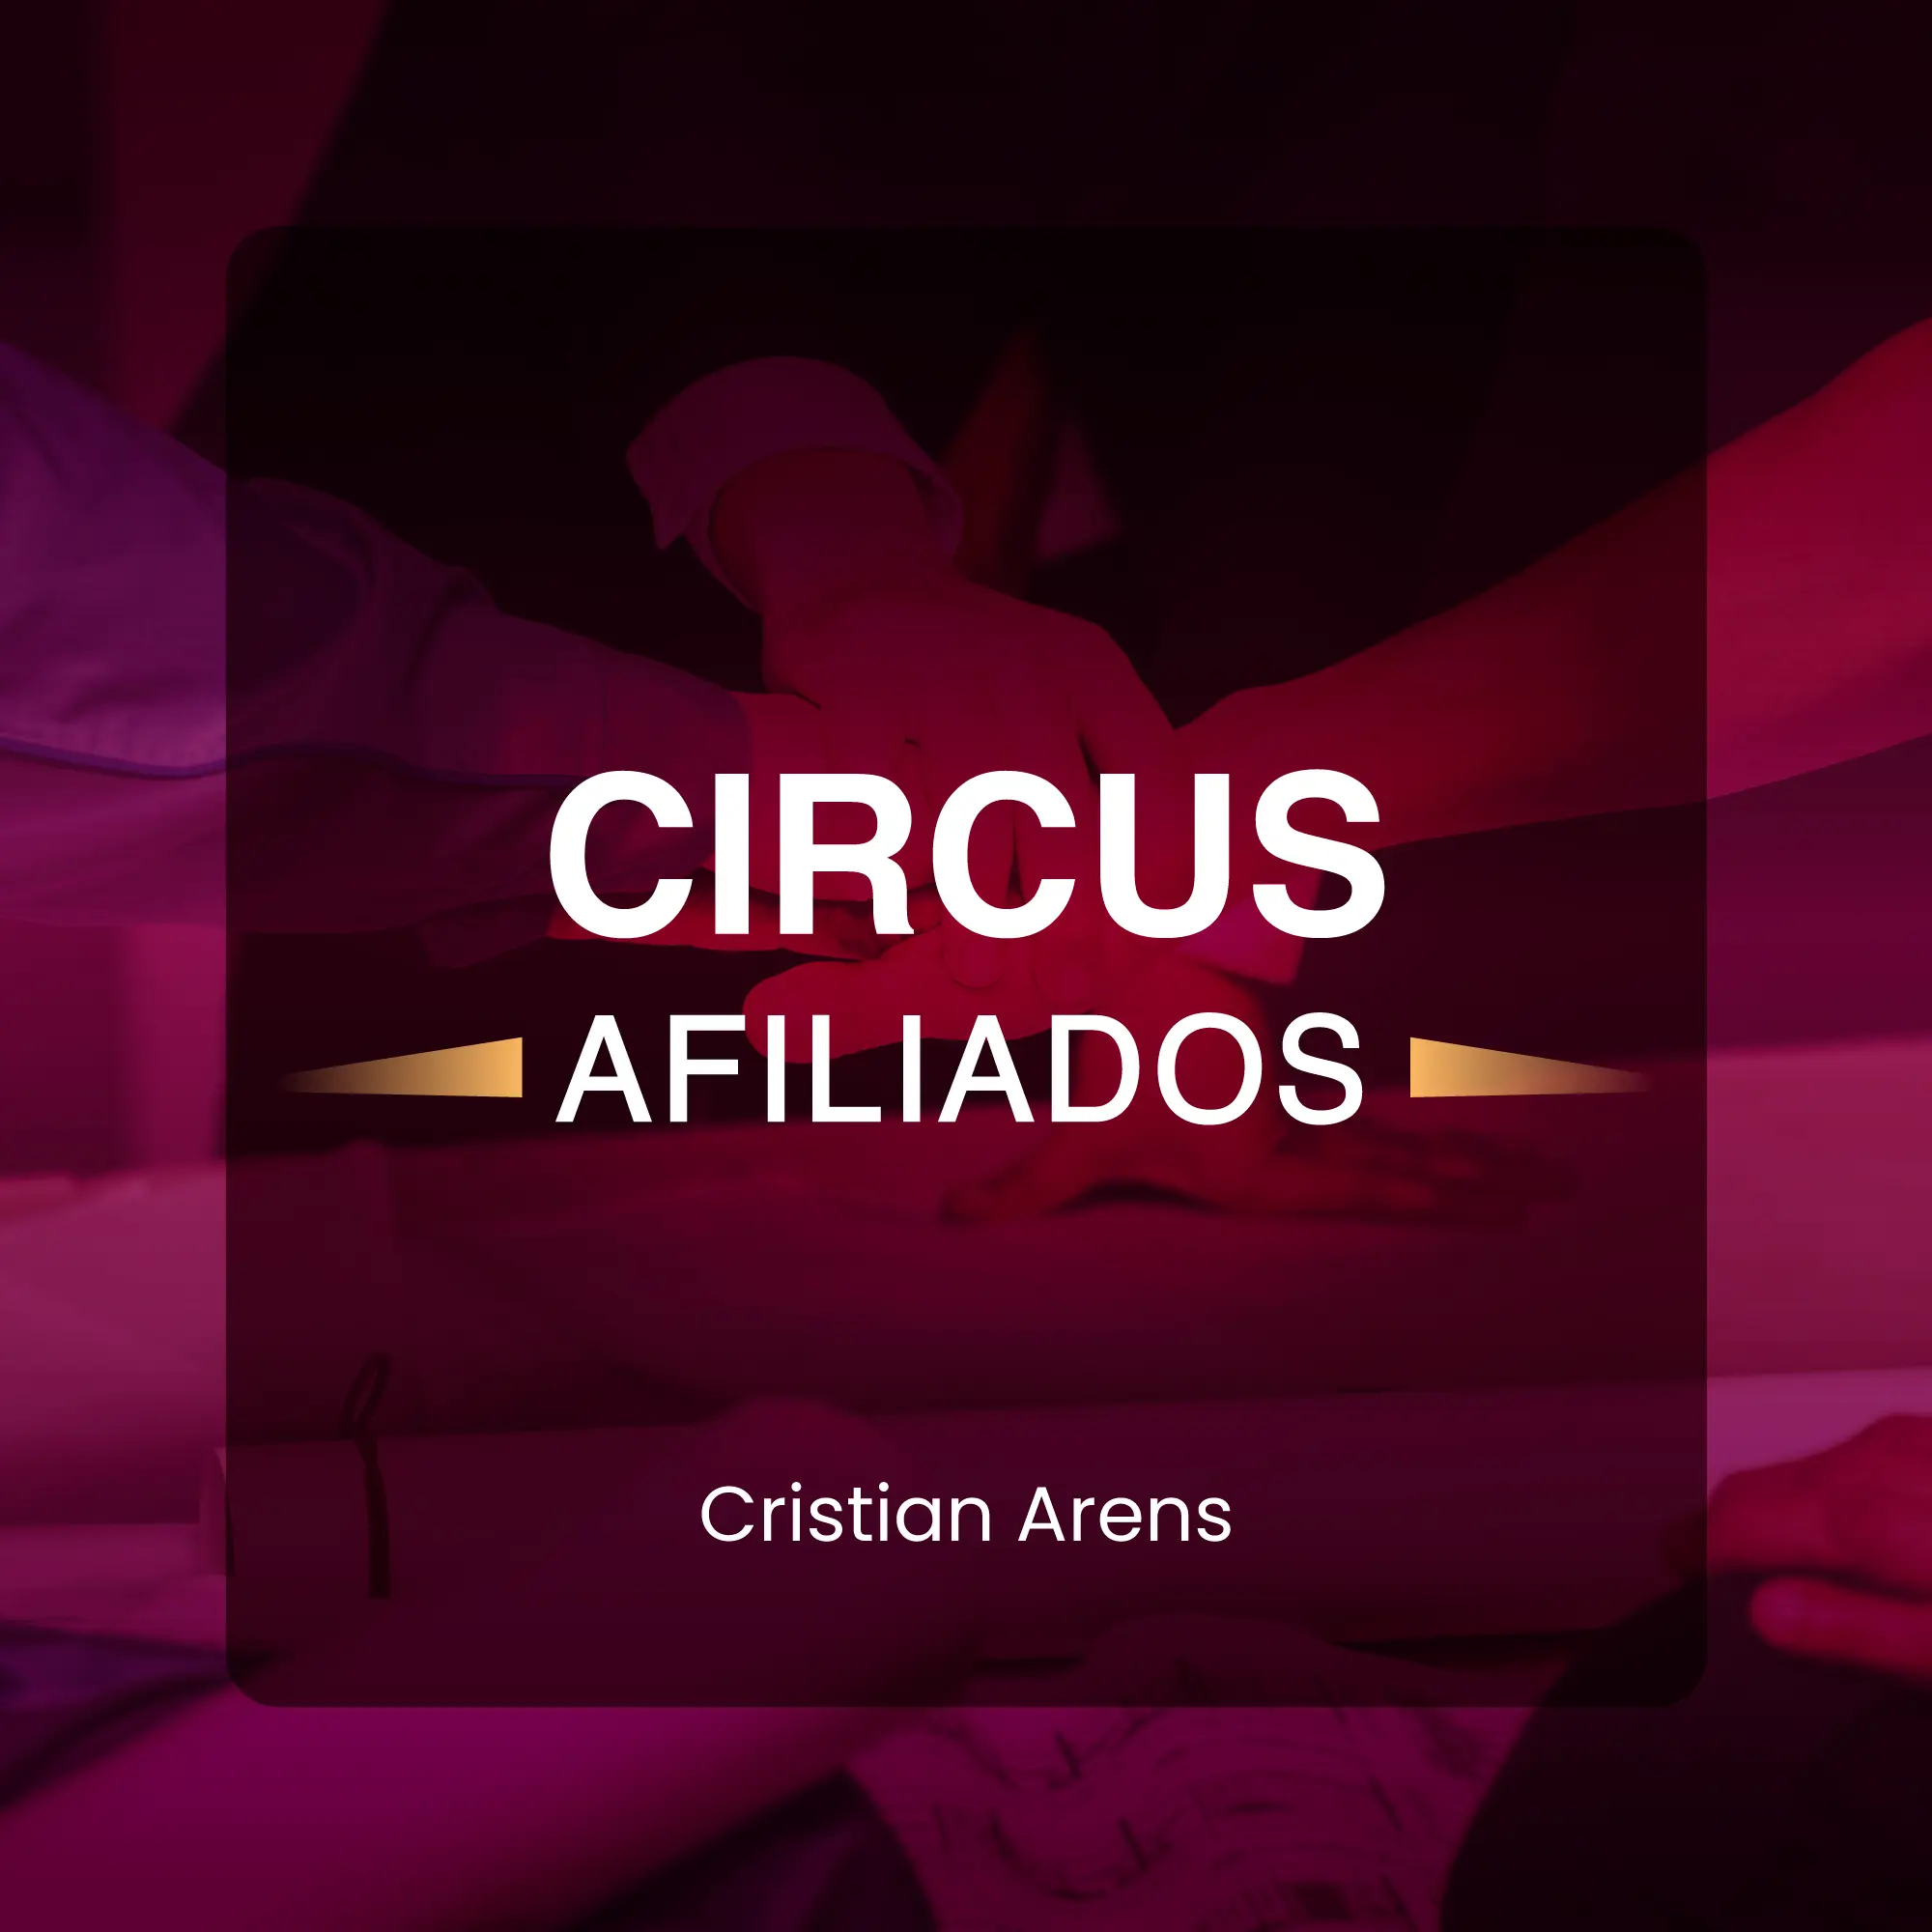 Circus afiliados